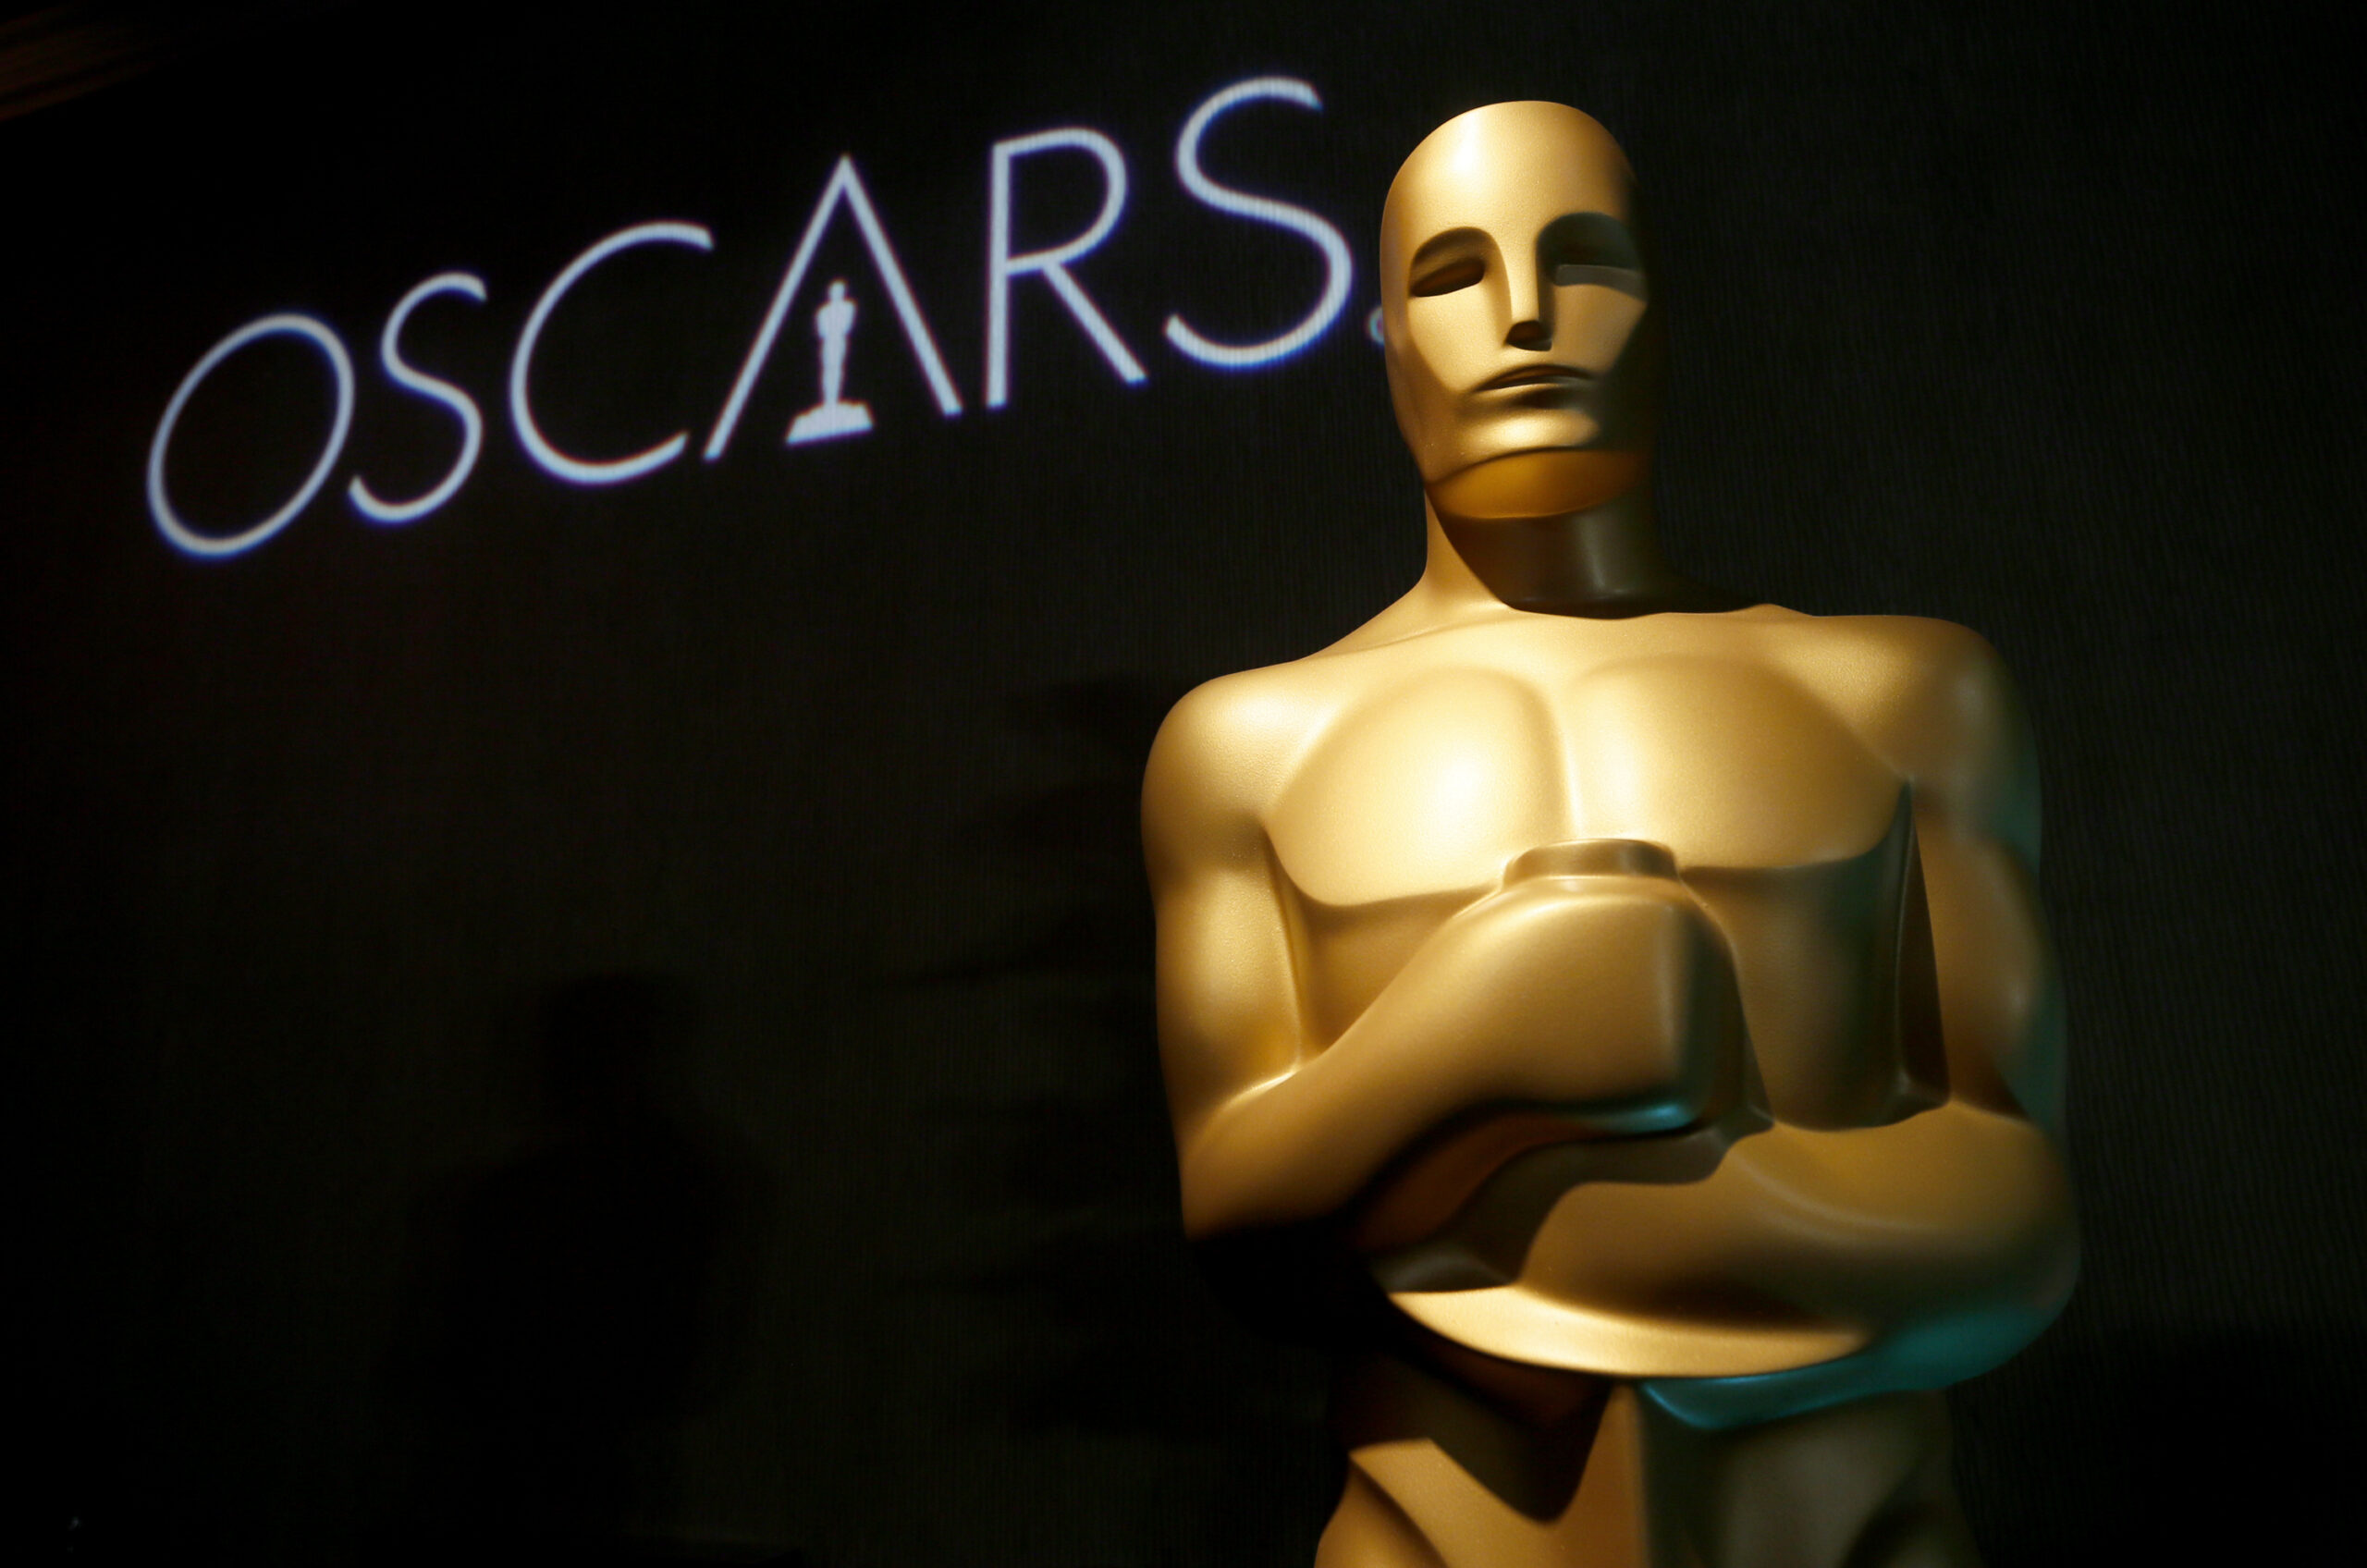 An Academy Award statuette